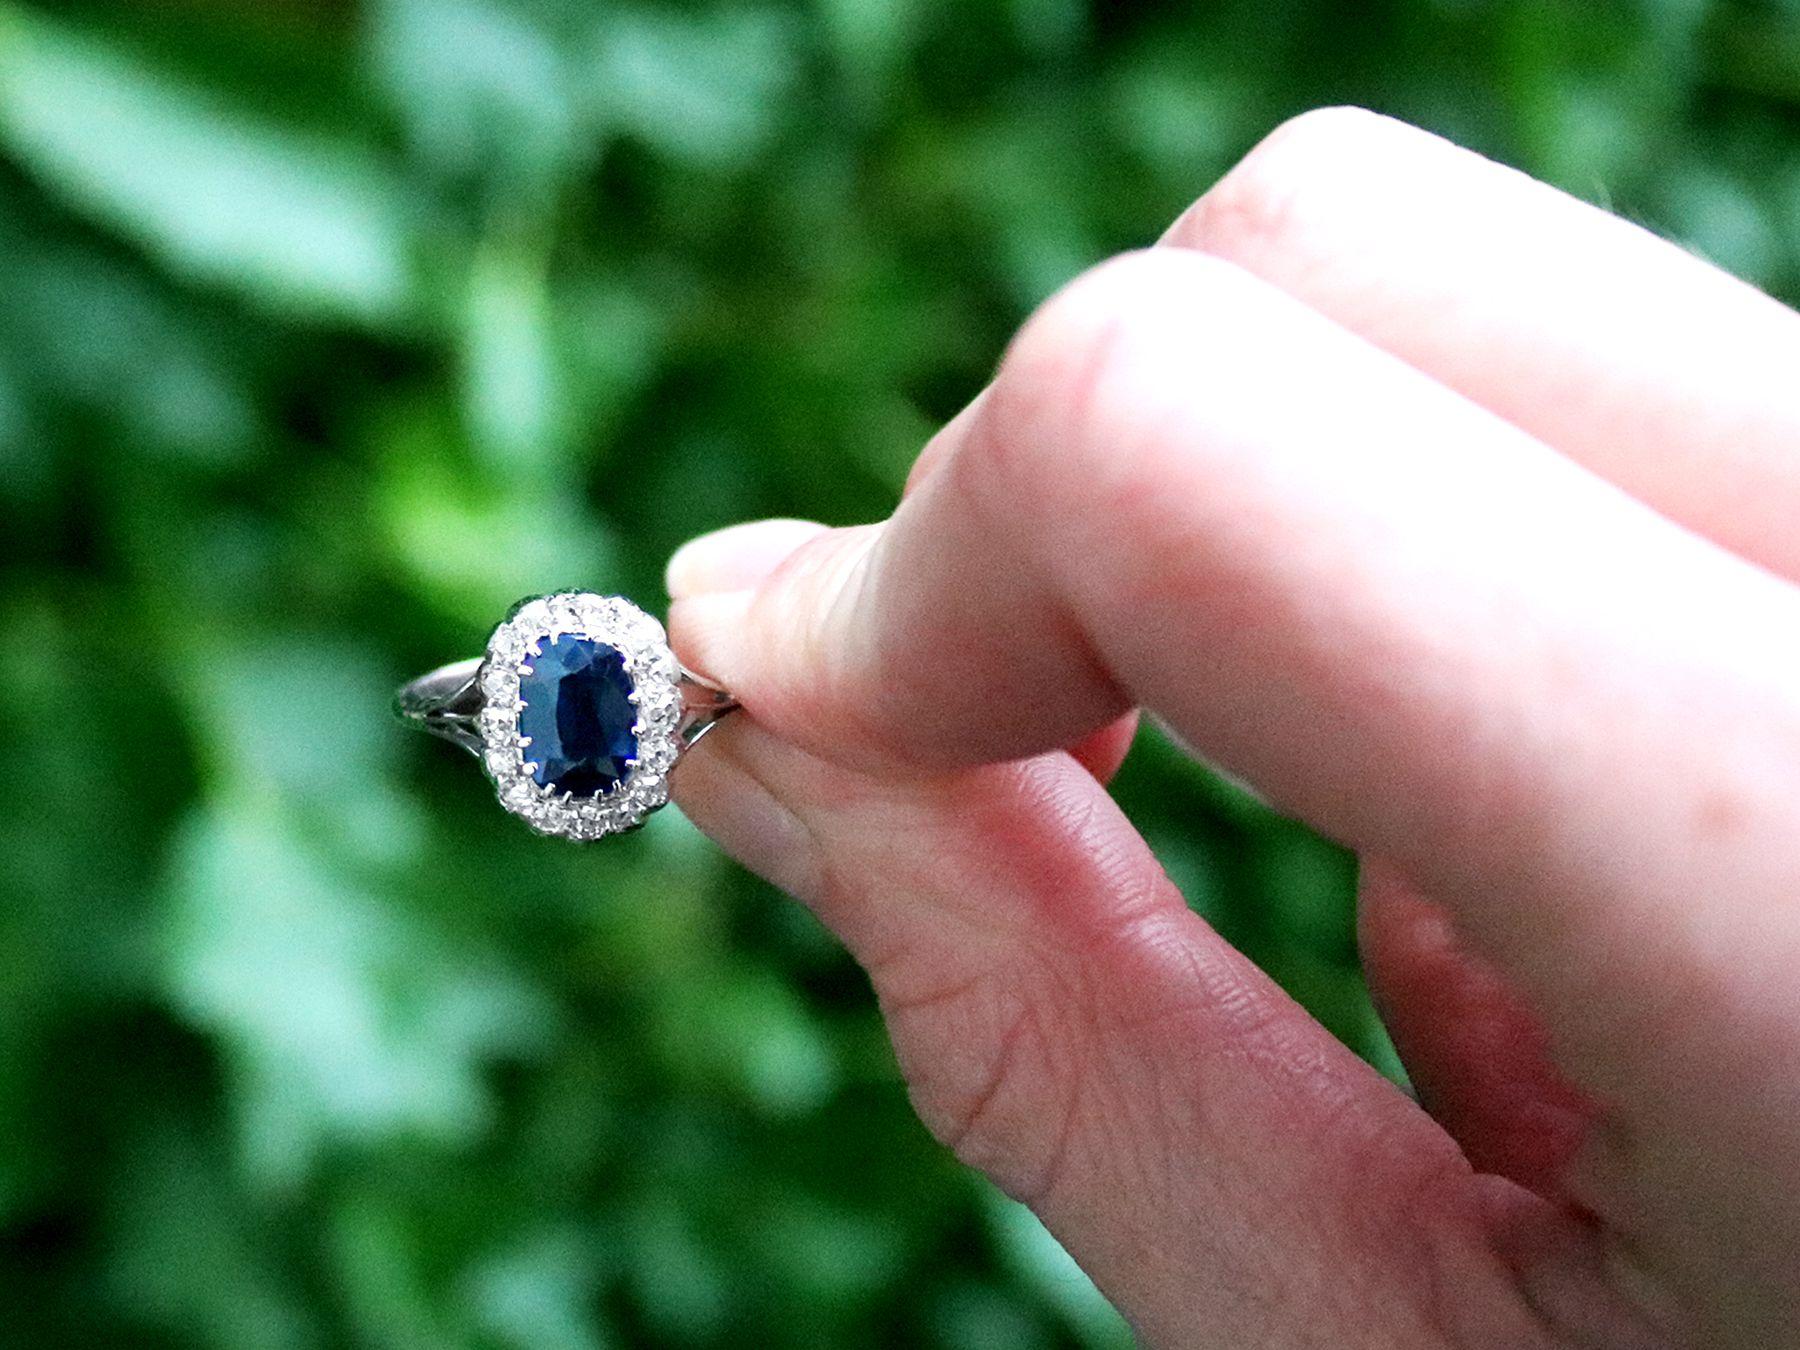 Eine feine und beeindruckende antike 1,55 Karat Saphir und 0,36 Karat Diamant, 18 Karat Weißgold Cluster-Stil Kleid Ring; Teil unserer vielfältigen antiken Schmuck und Nachlassschmuck Sammlungen

Dieser feine und beeindruckende Ring mit blauem